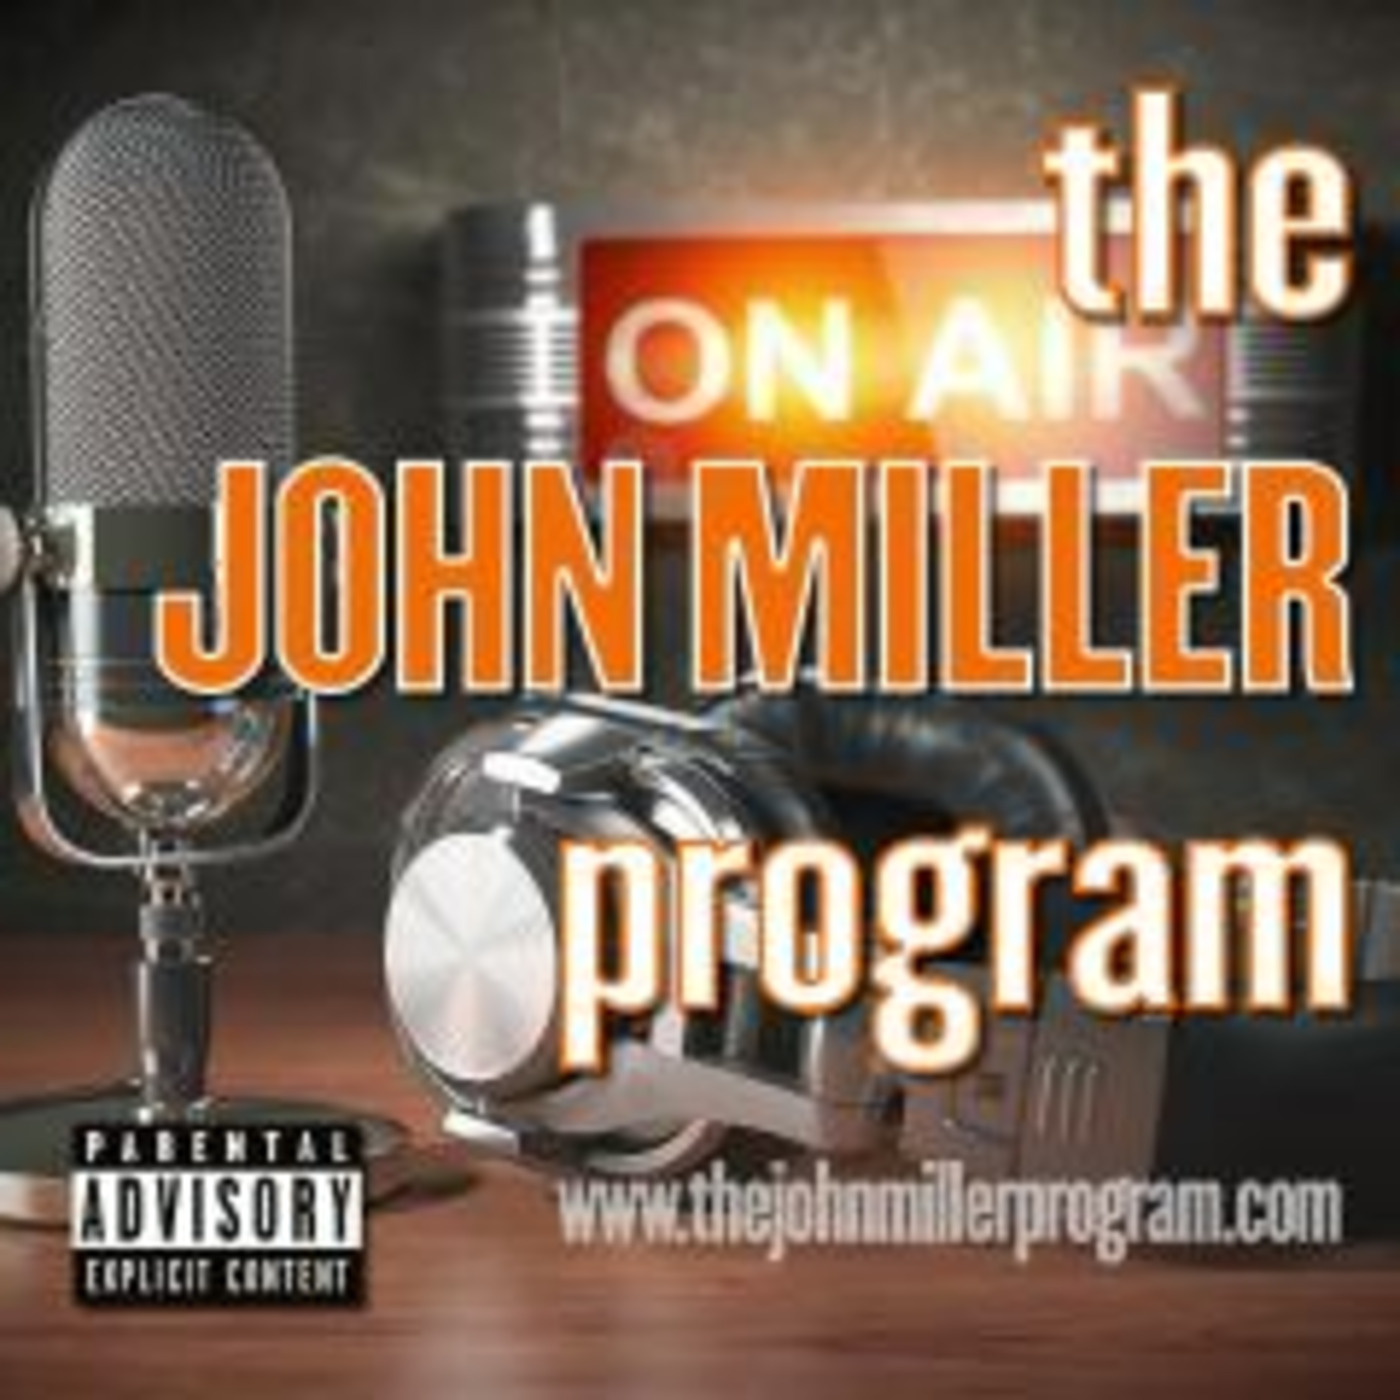 Episode 13: The John Miller Program w/Phil Perrier #13